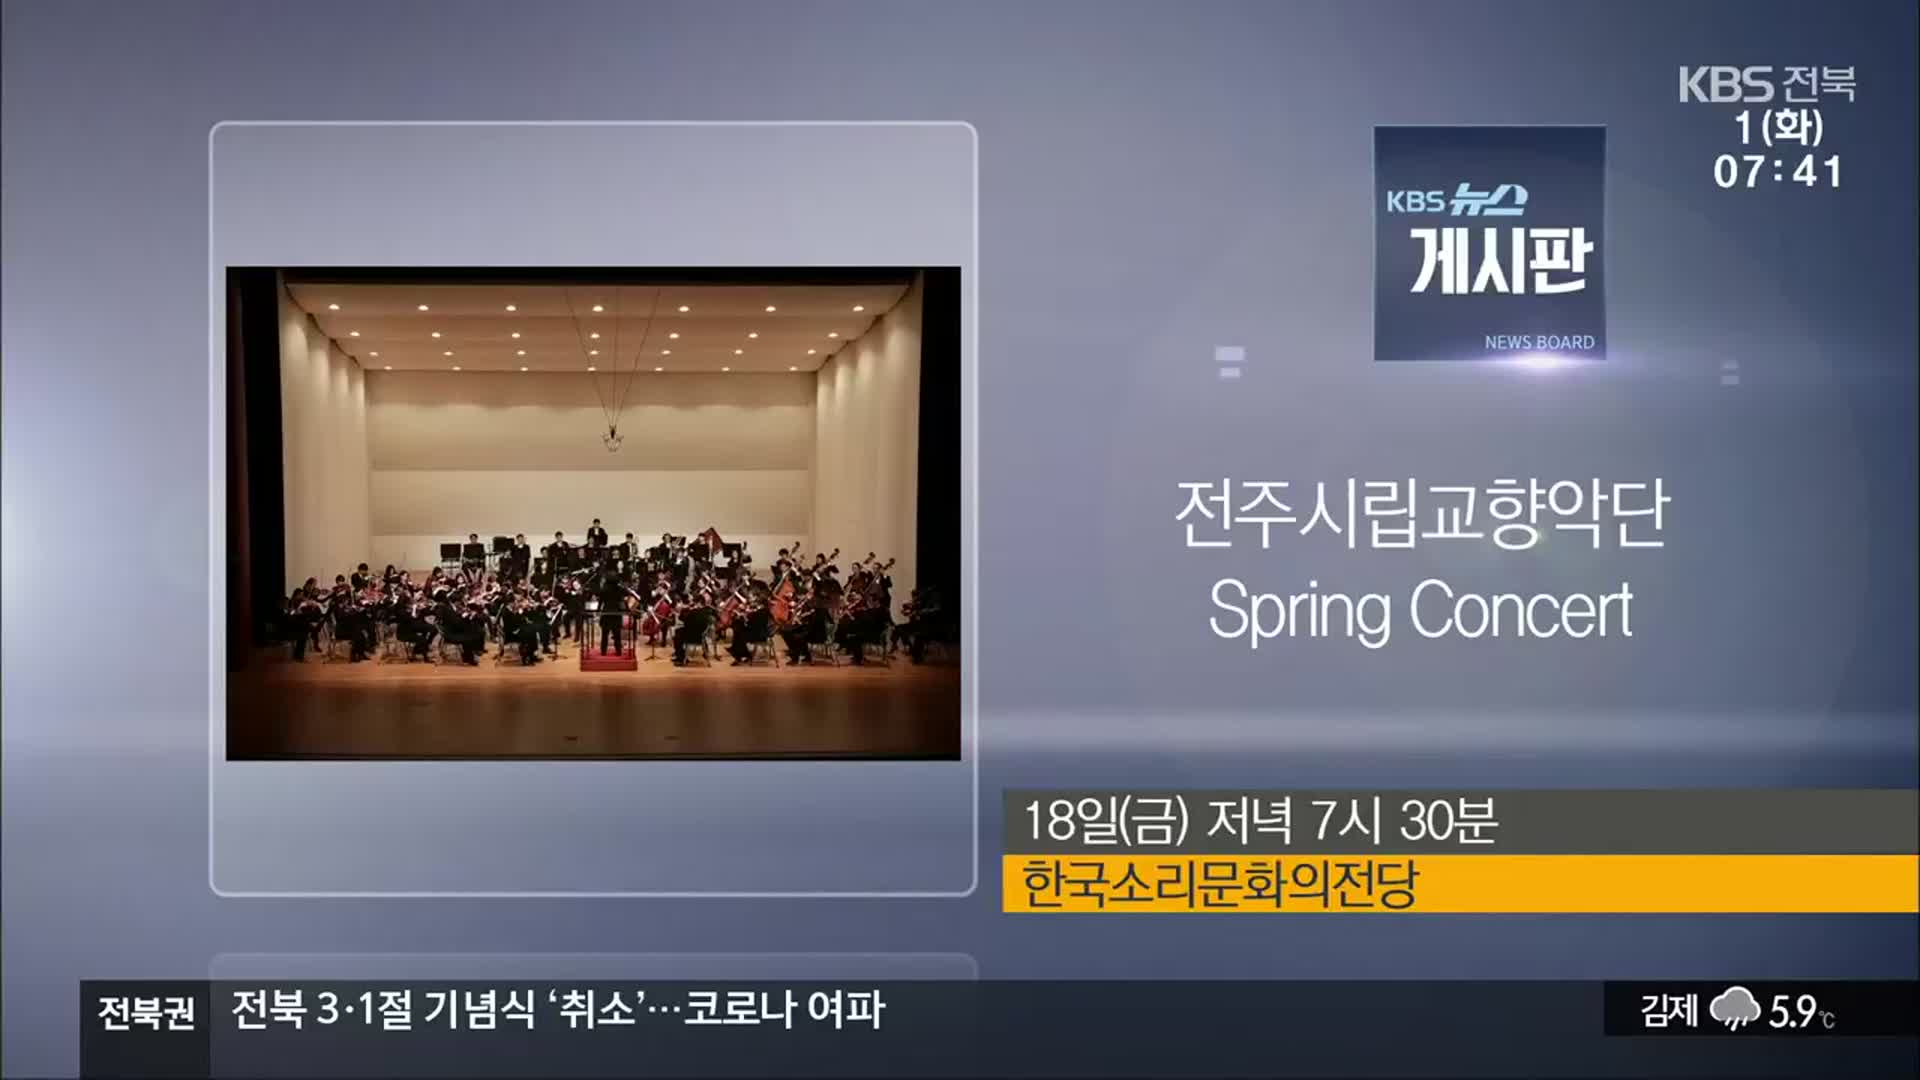 [게시판] 전주시립교향악단 Spring Concert 외